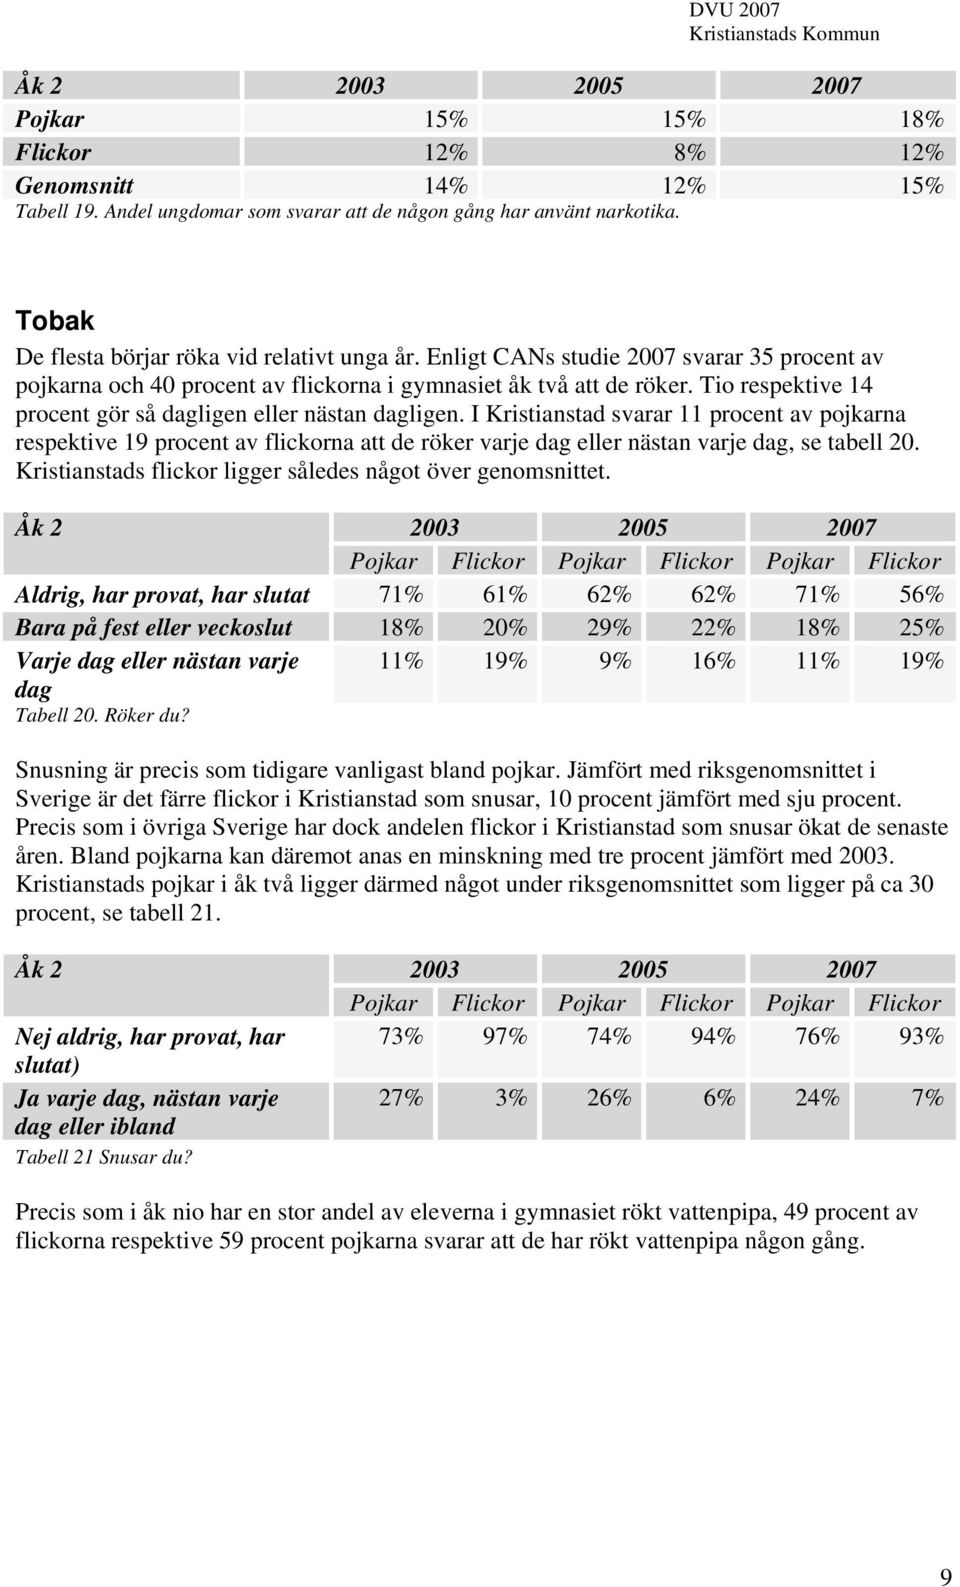 I Kristianstad svarar 11 procent av pojkarna respektive 19 procent av flickorna att de röker varje dag eller nästan varje dag, se tabell 20.